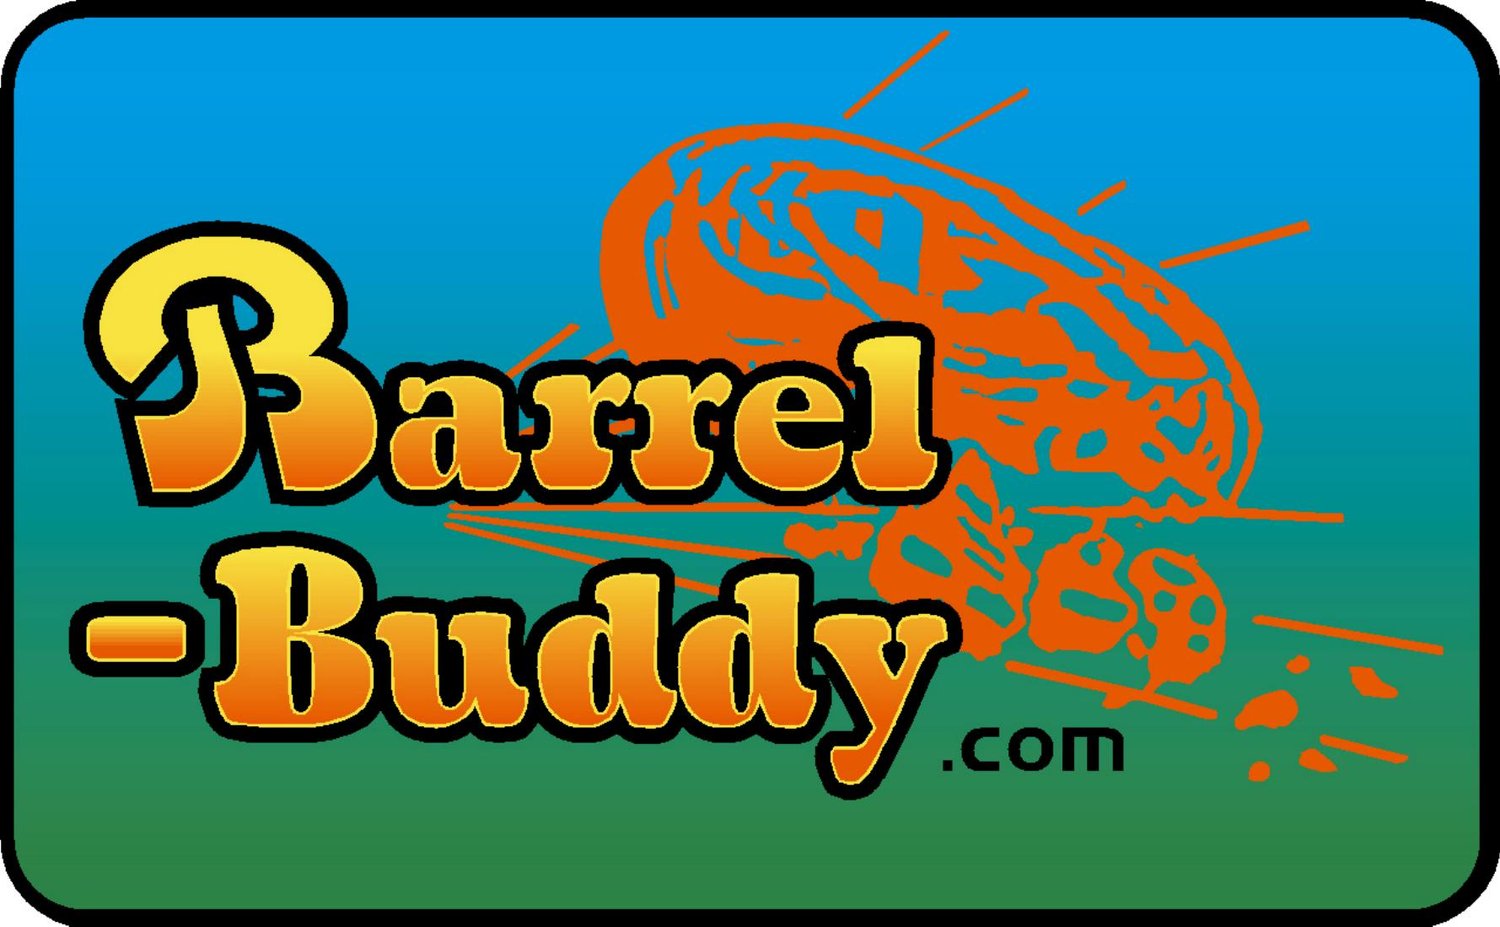 Barrel Buddy